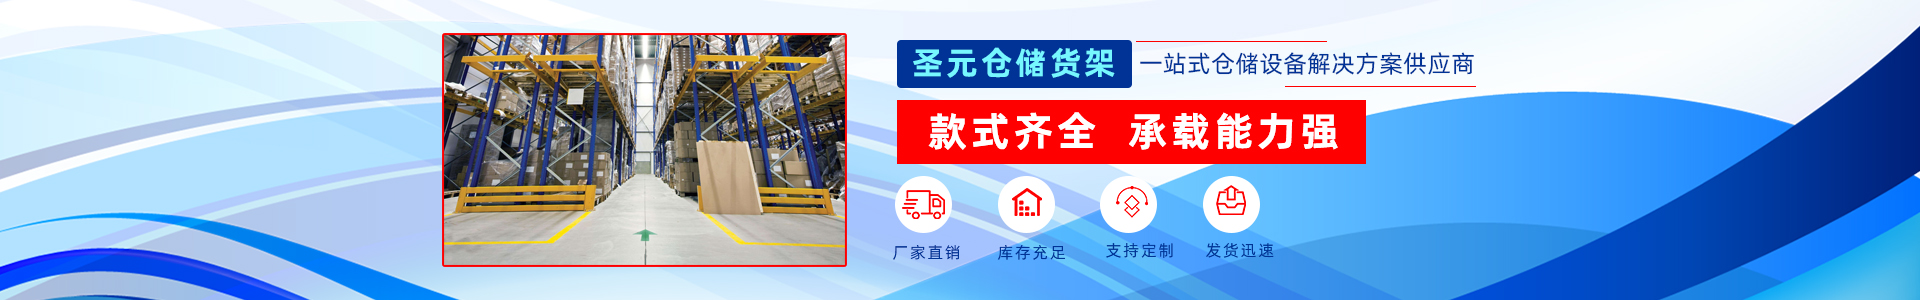 北京圣元恒业货架制造有限公司解决方案